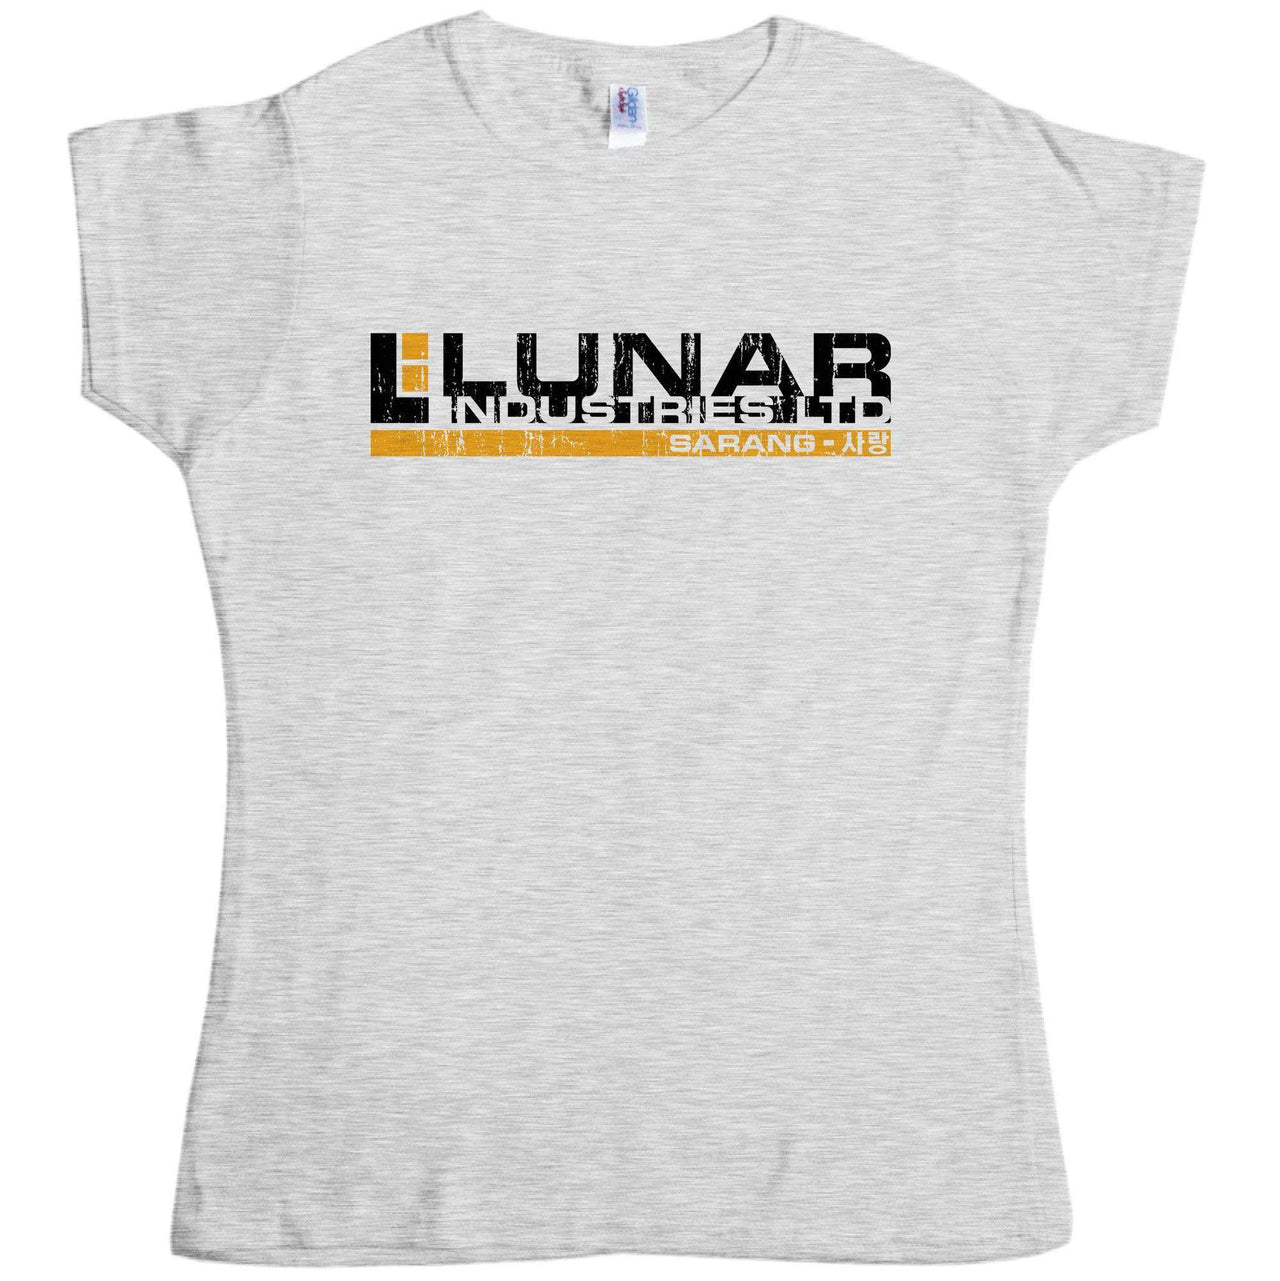 Lunar Industries Womens Fitted T-Shirt 8Ball